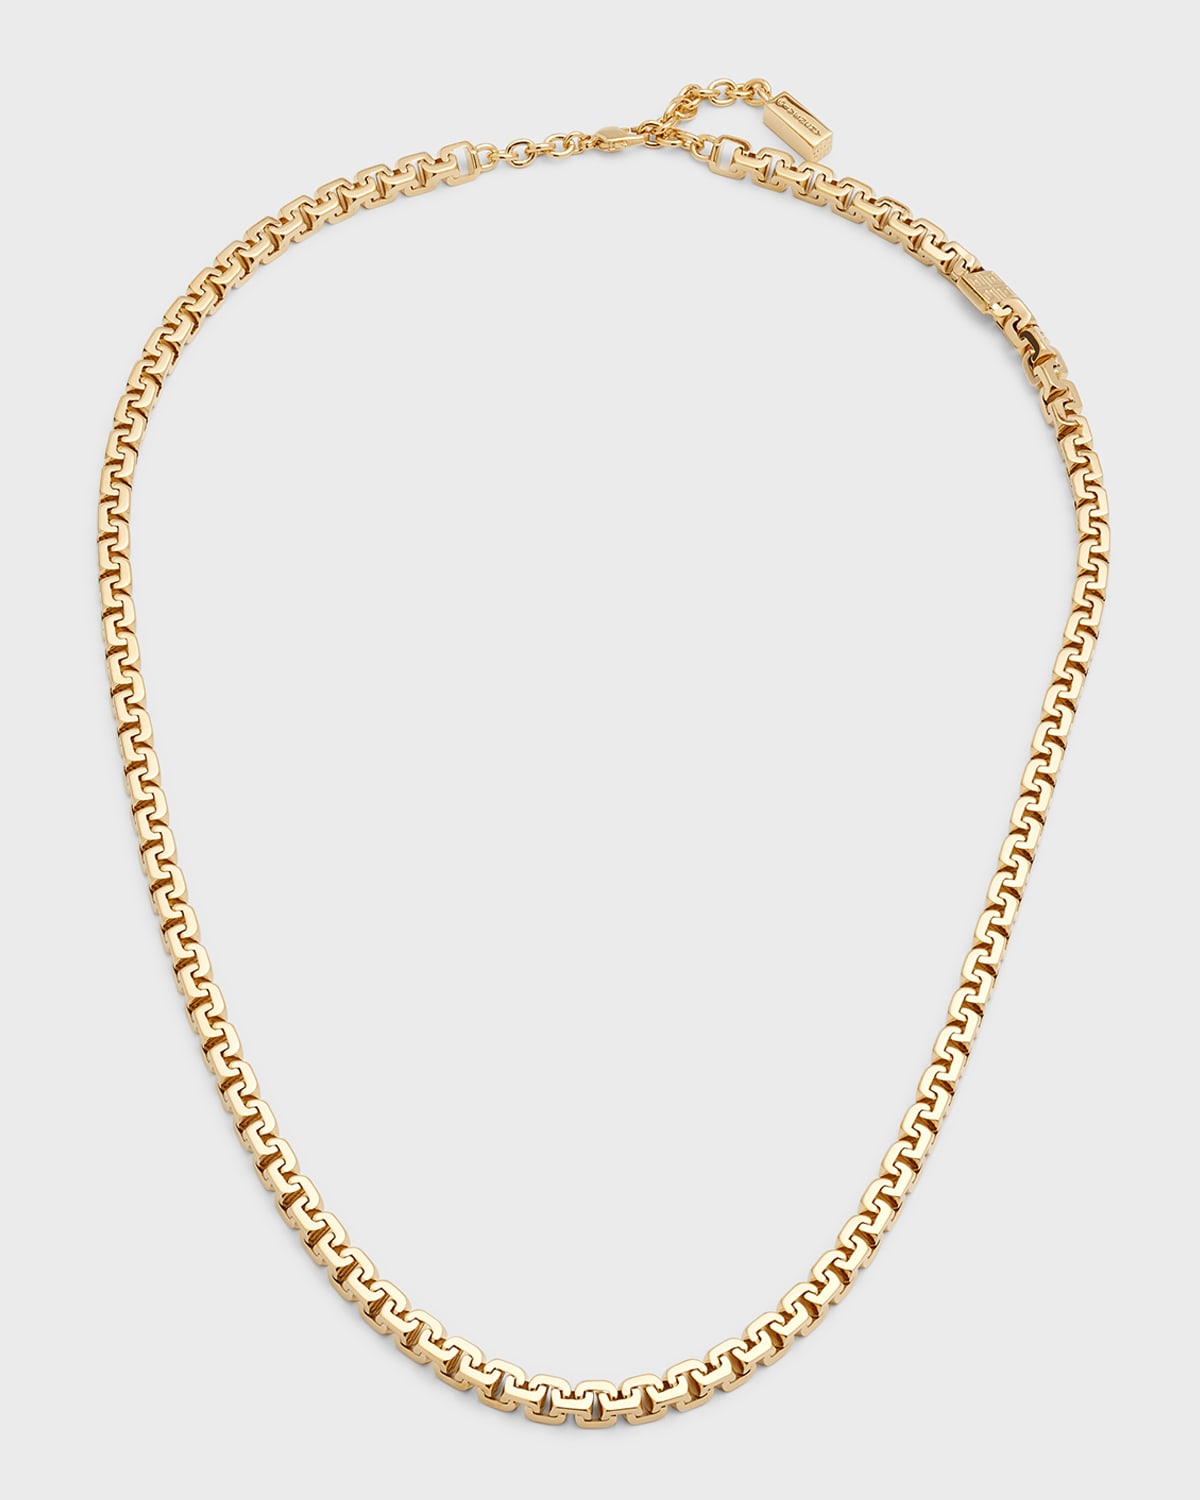 Men's Gold-Tone G-Chain Necklace, 20"L